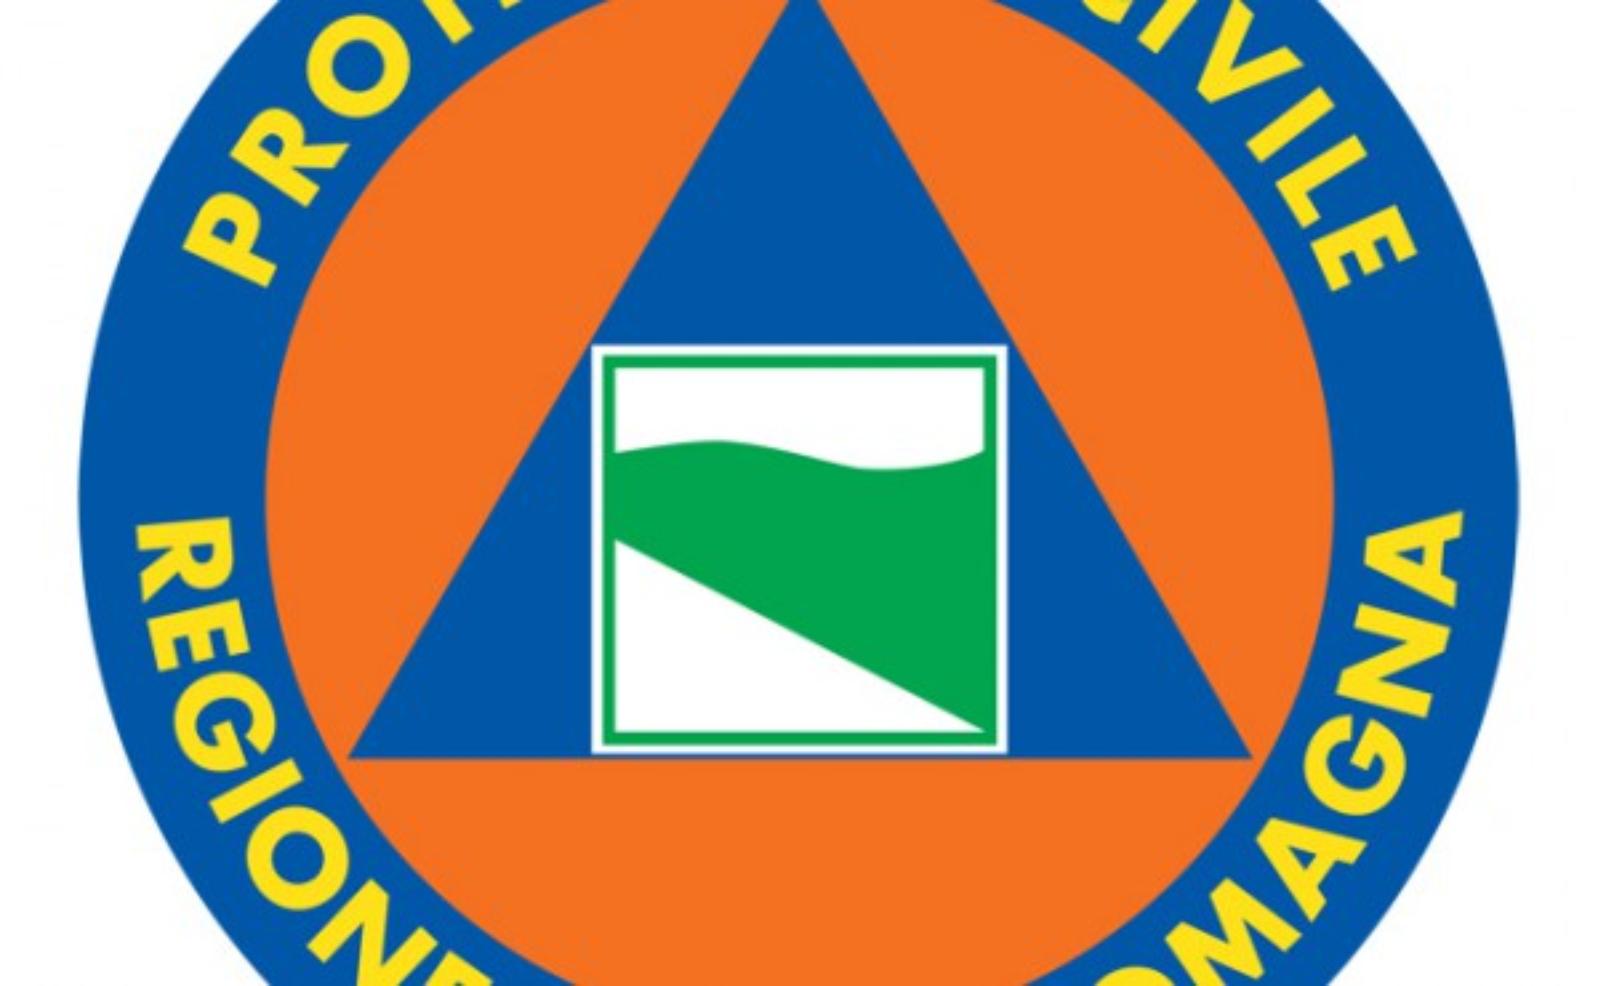 Agenzia di Protezione Civile Regione Emilia-Romagna